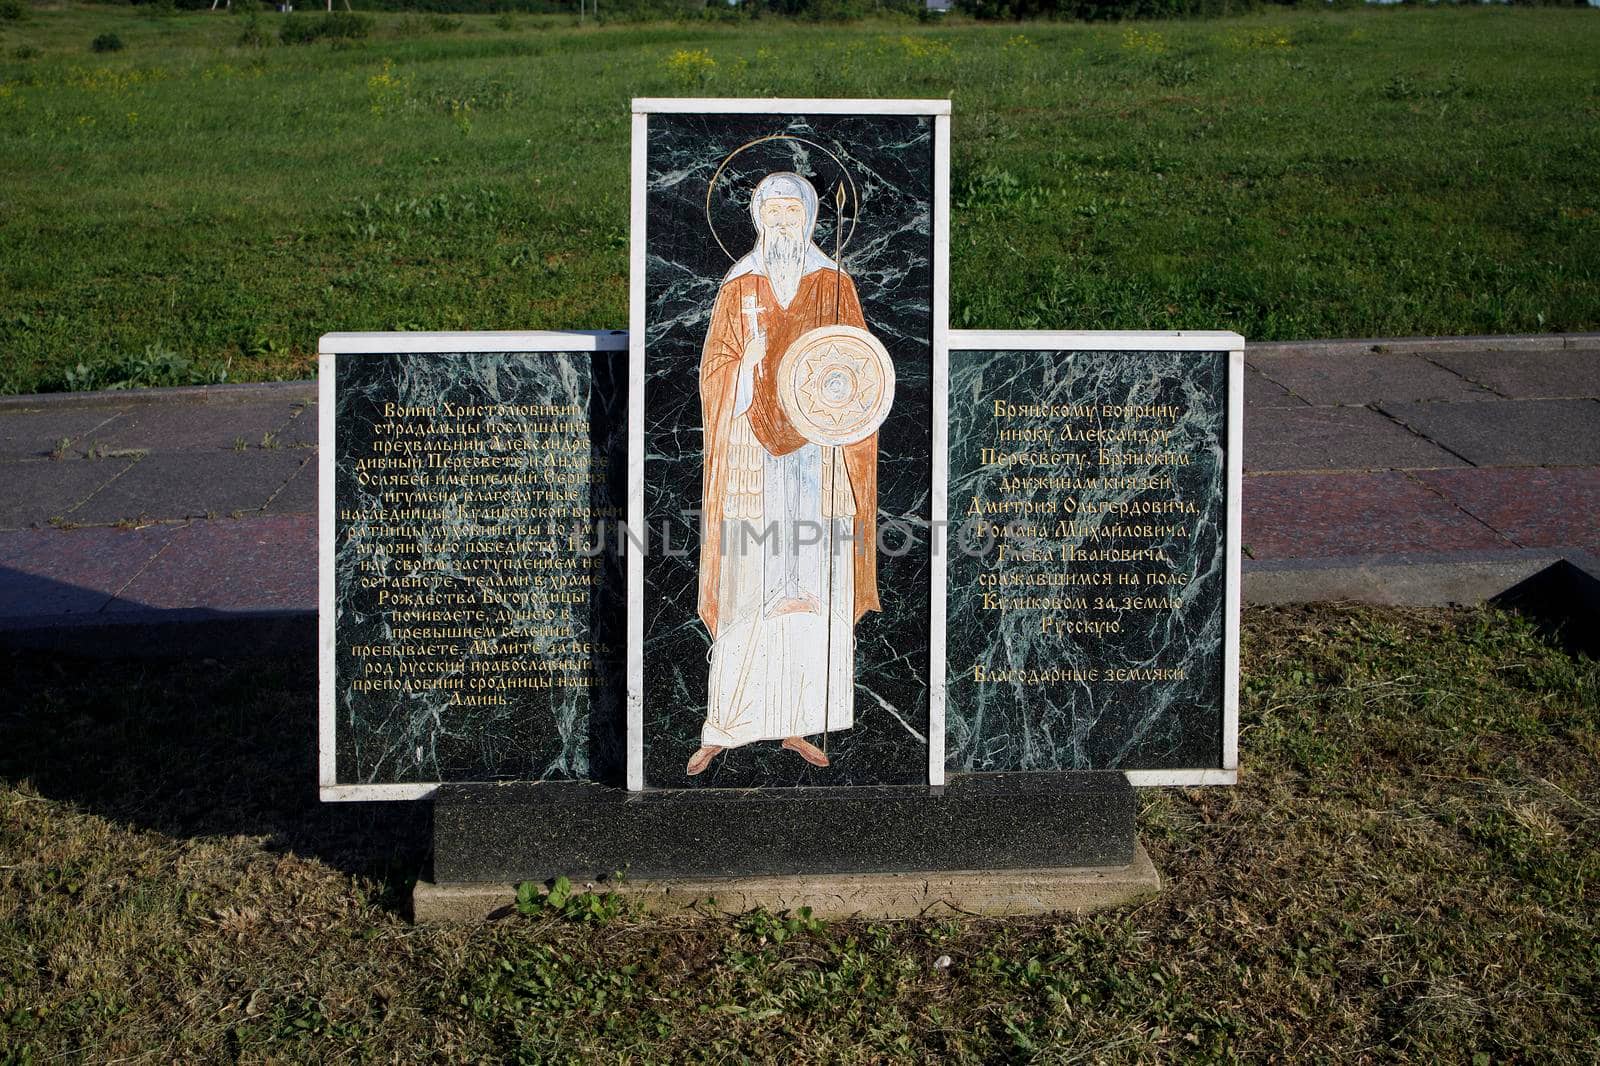 Monastyrshchino, Yepifan, Tula , Russia - June 8, 2021: Kulikovo field monument cross to Bryansk heroes of the Battle of Kulikovo